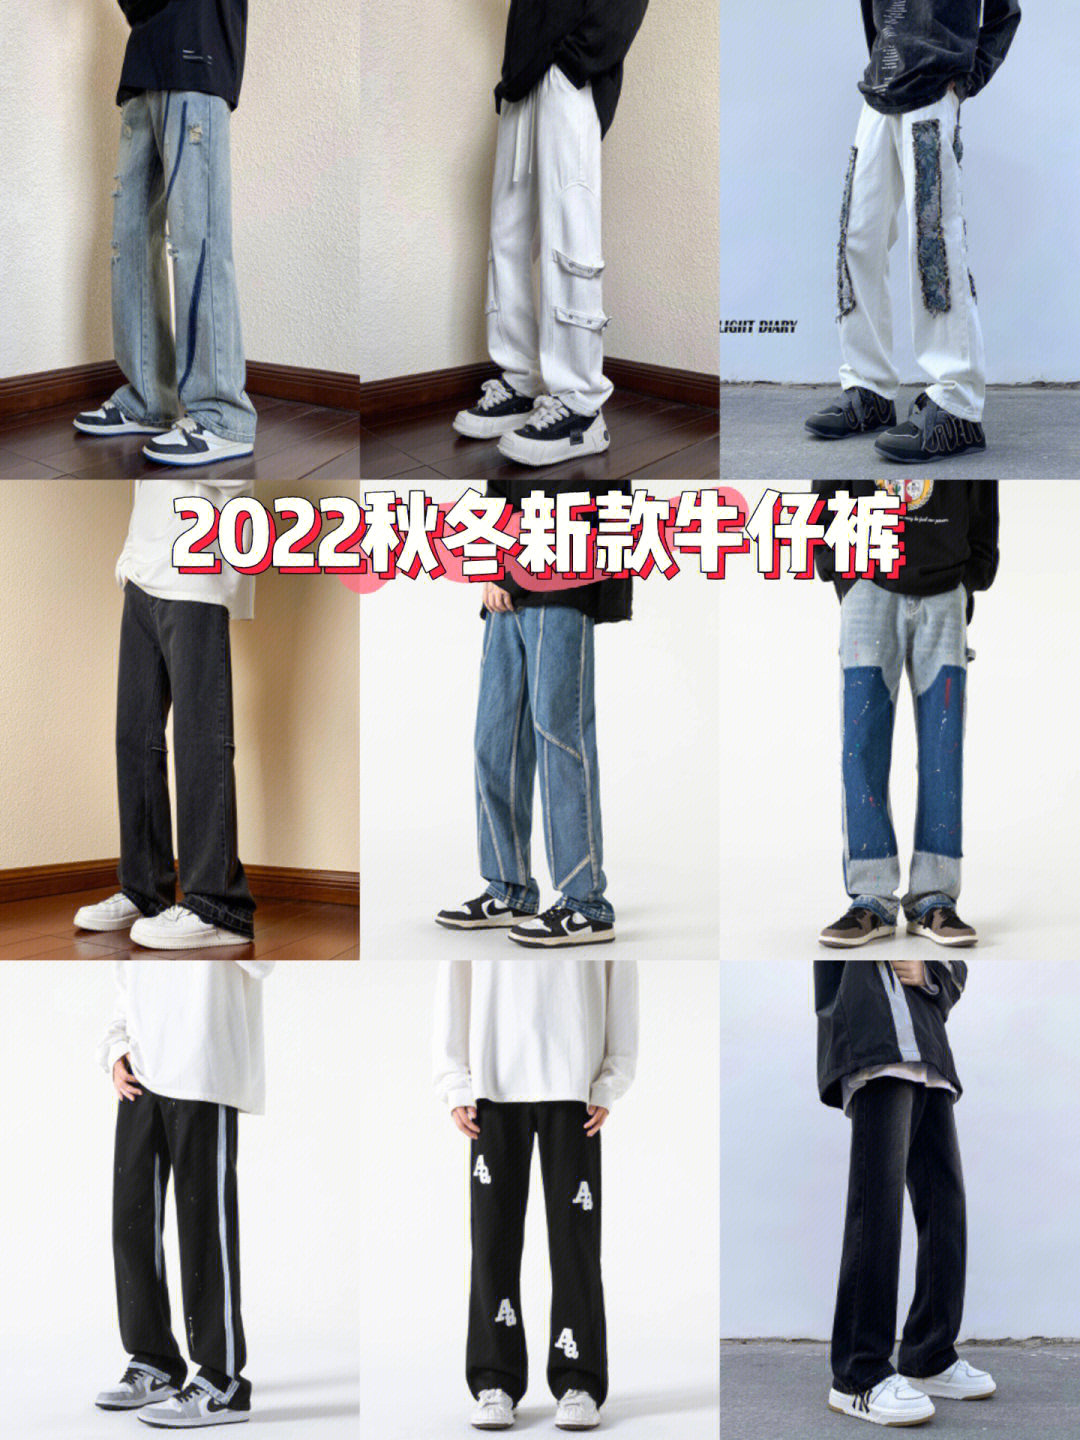 牛仔裤未来的发展趋势图片